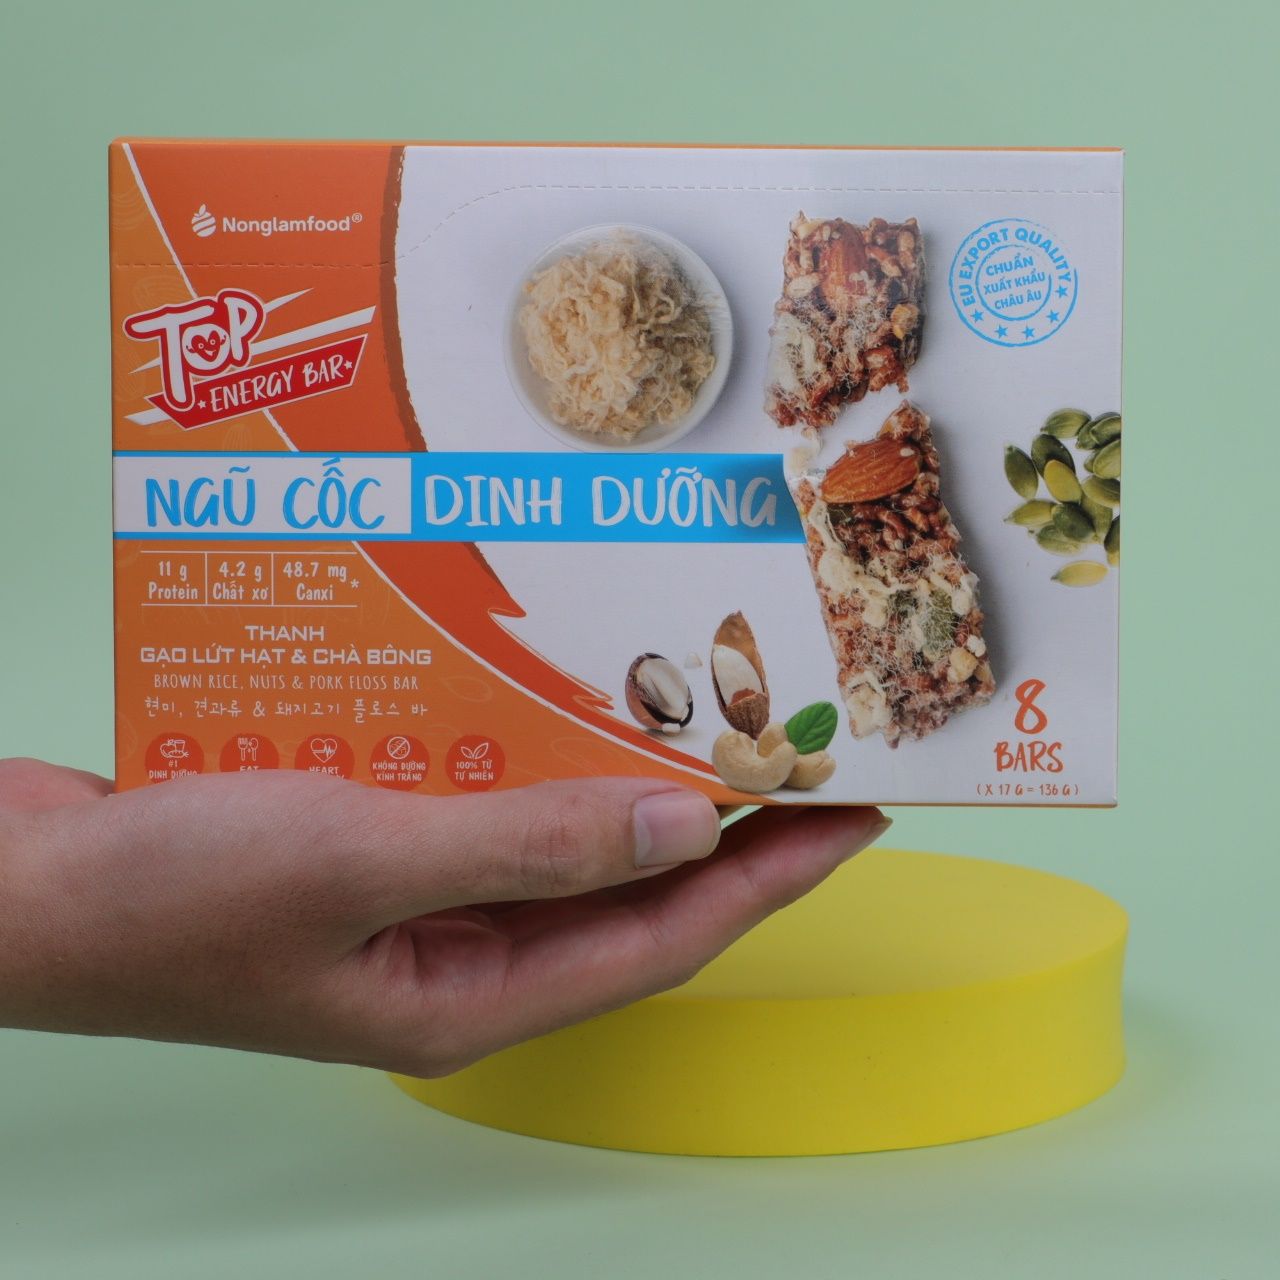 Thanh gạo lứt hạt & chà bông Nonglamfood hộp 8 thanh 136g | Healthy Snack